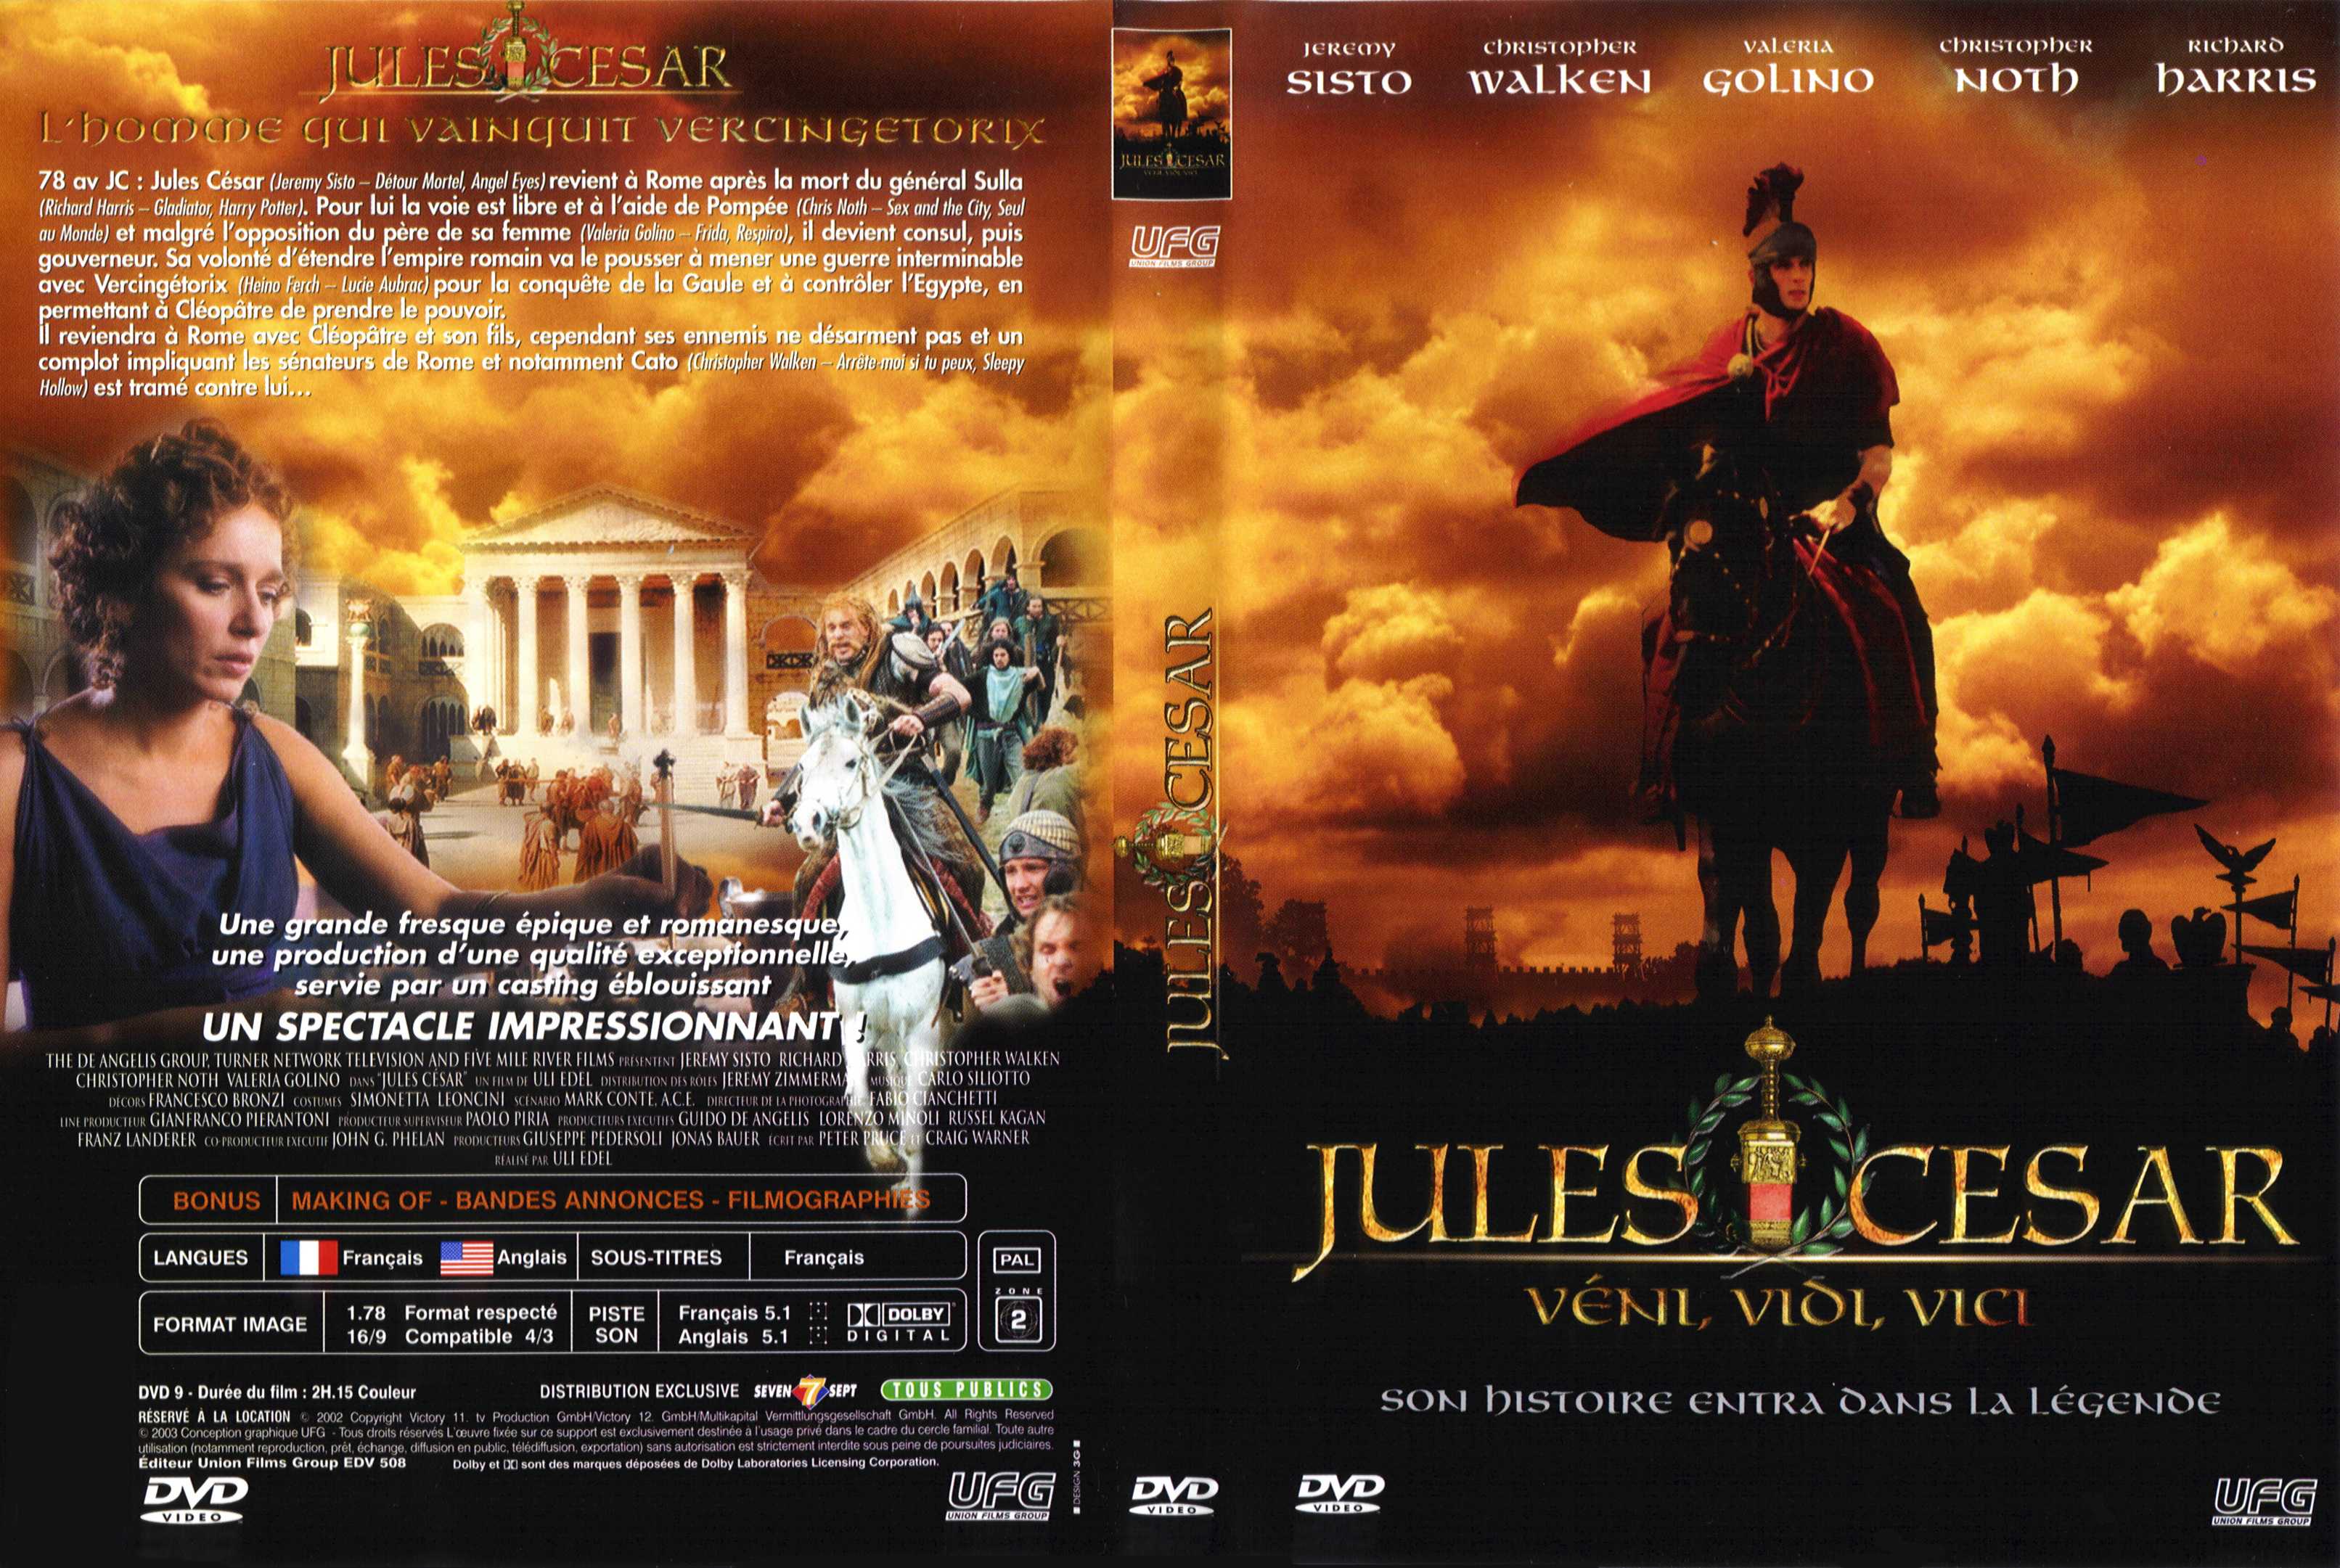 Jaquette DVD Jules Csar